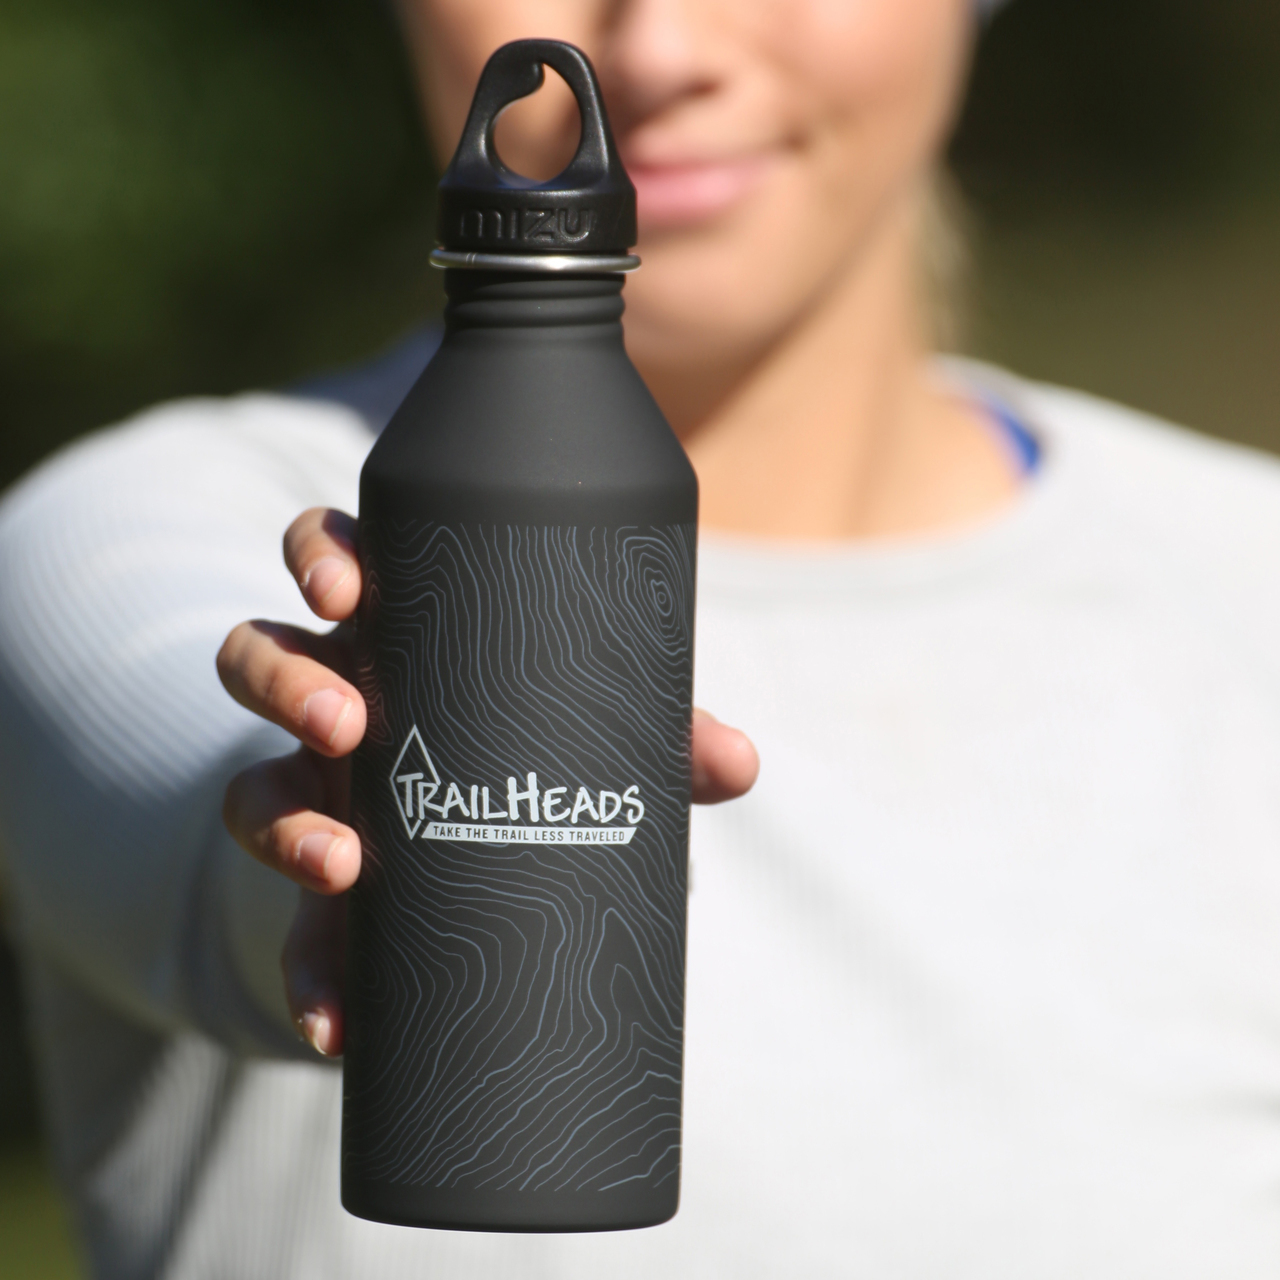 Water bottle gift idea for runner